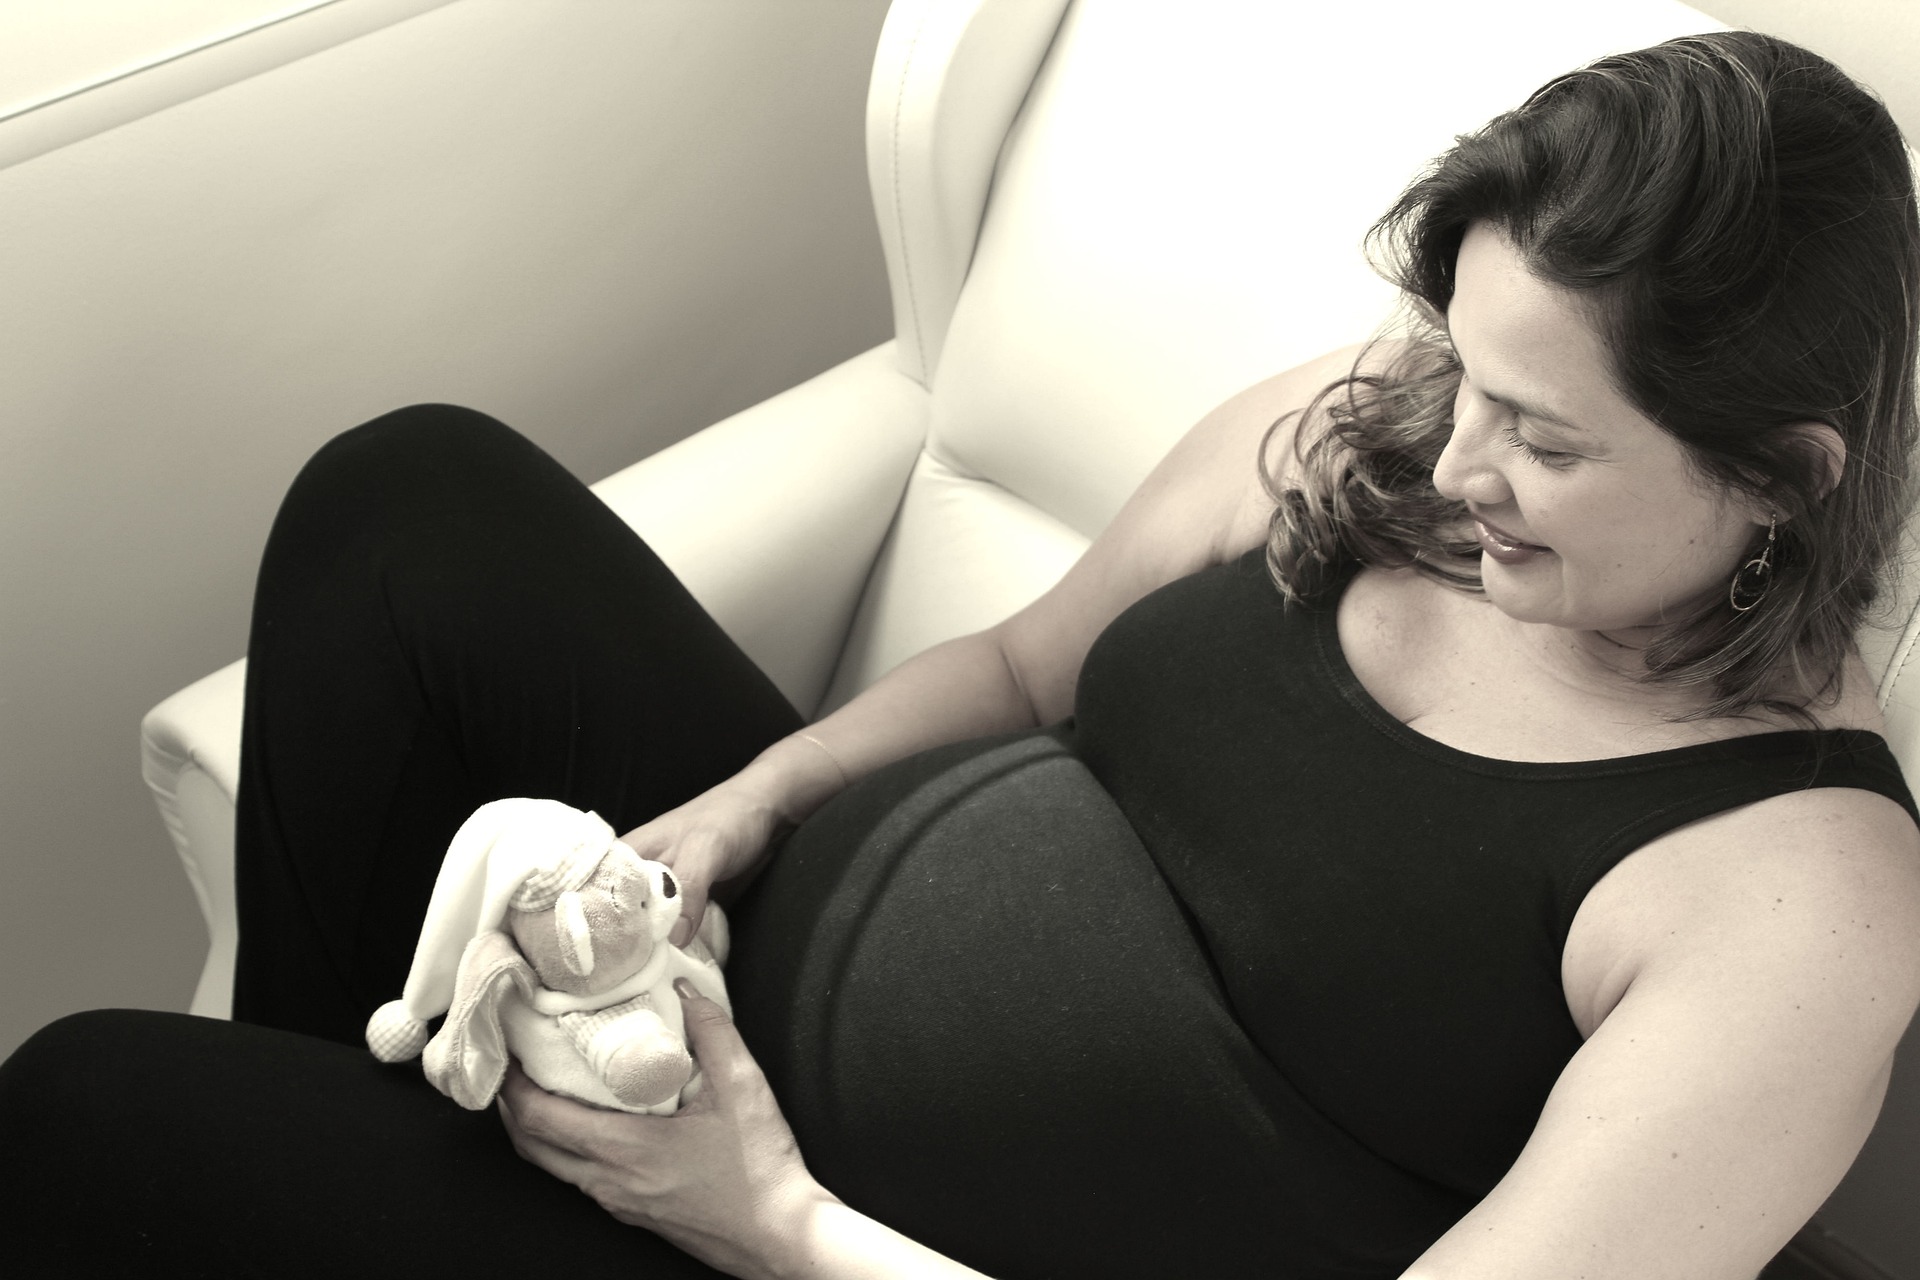 مستلزمات الحامل طوال فترة الحمل